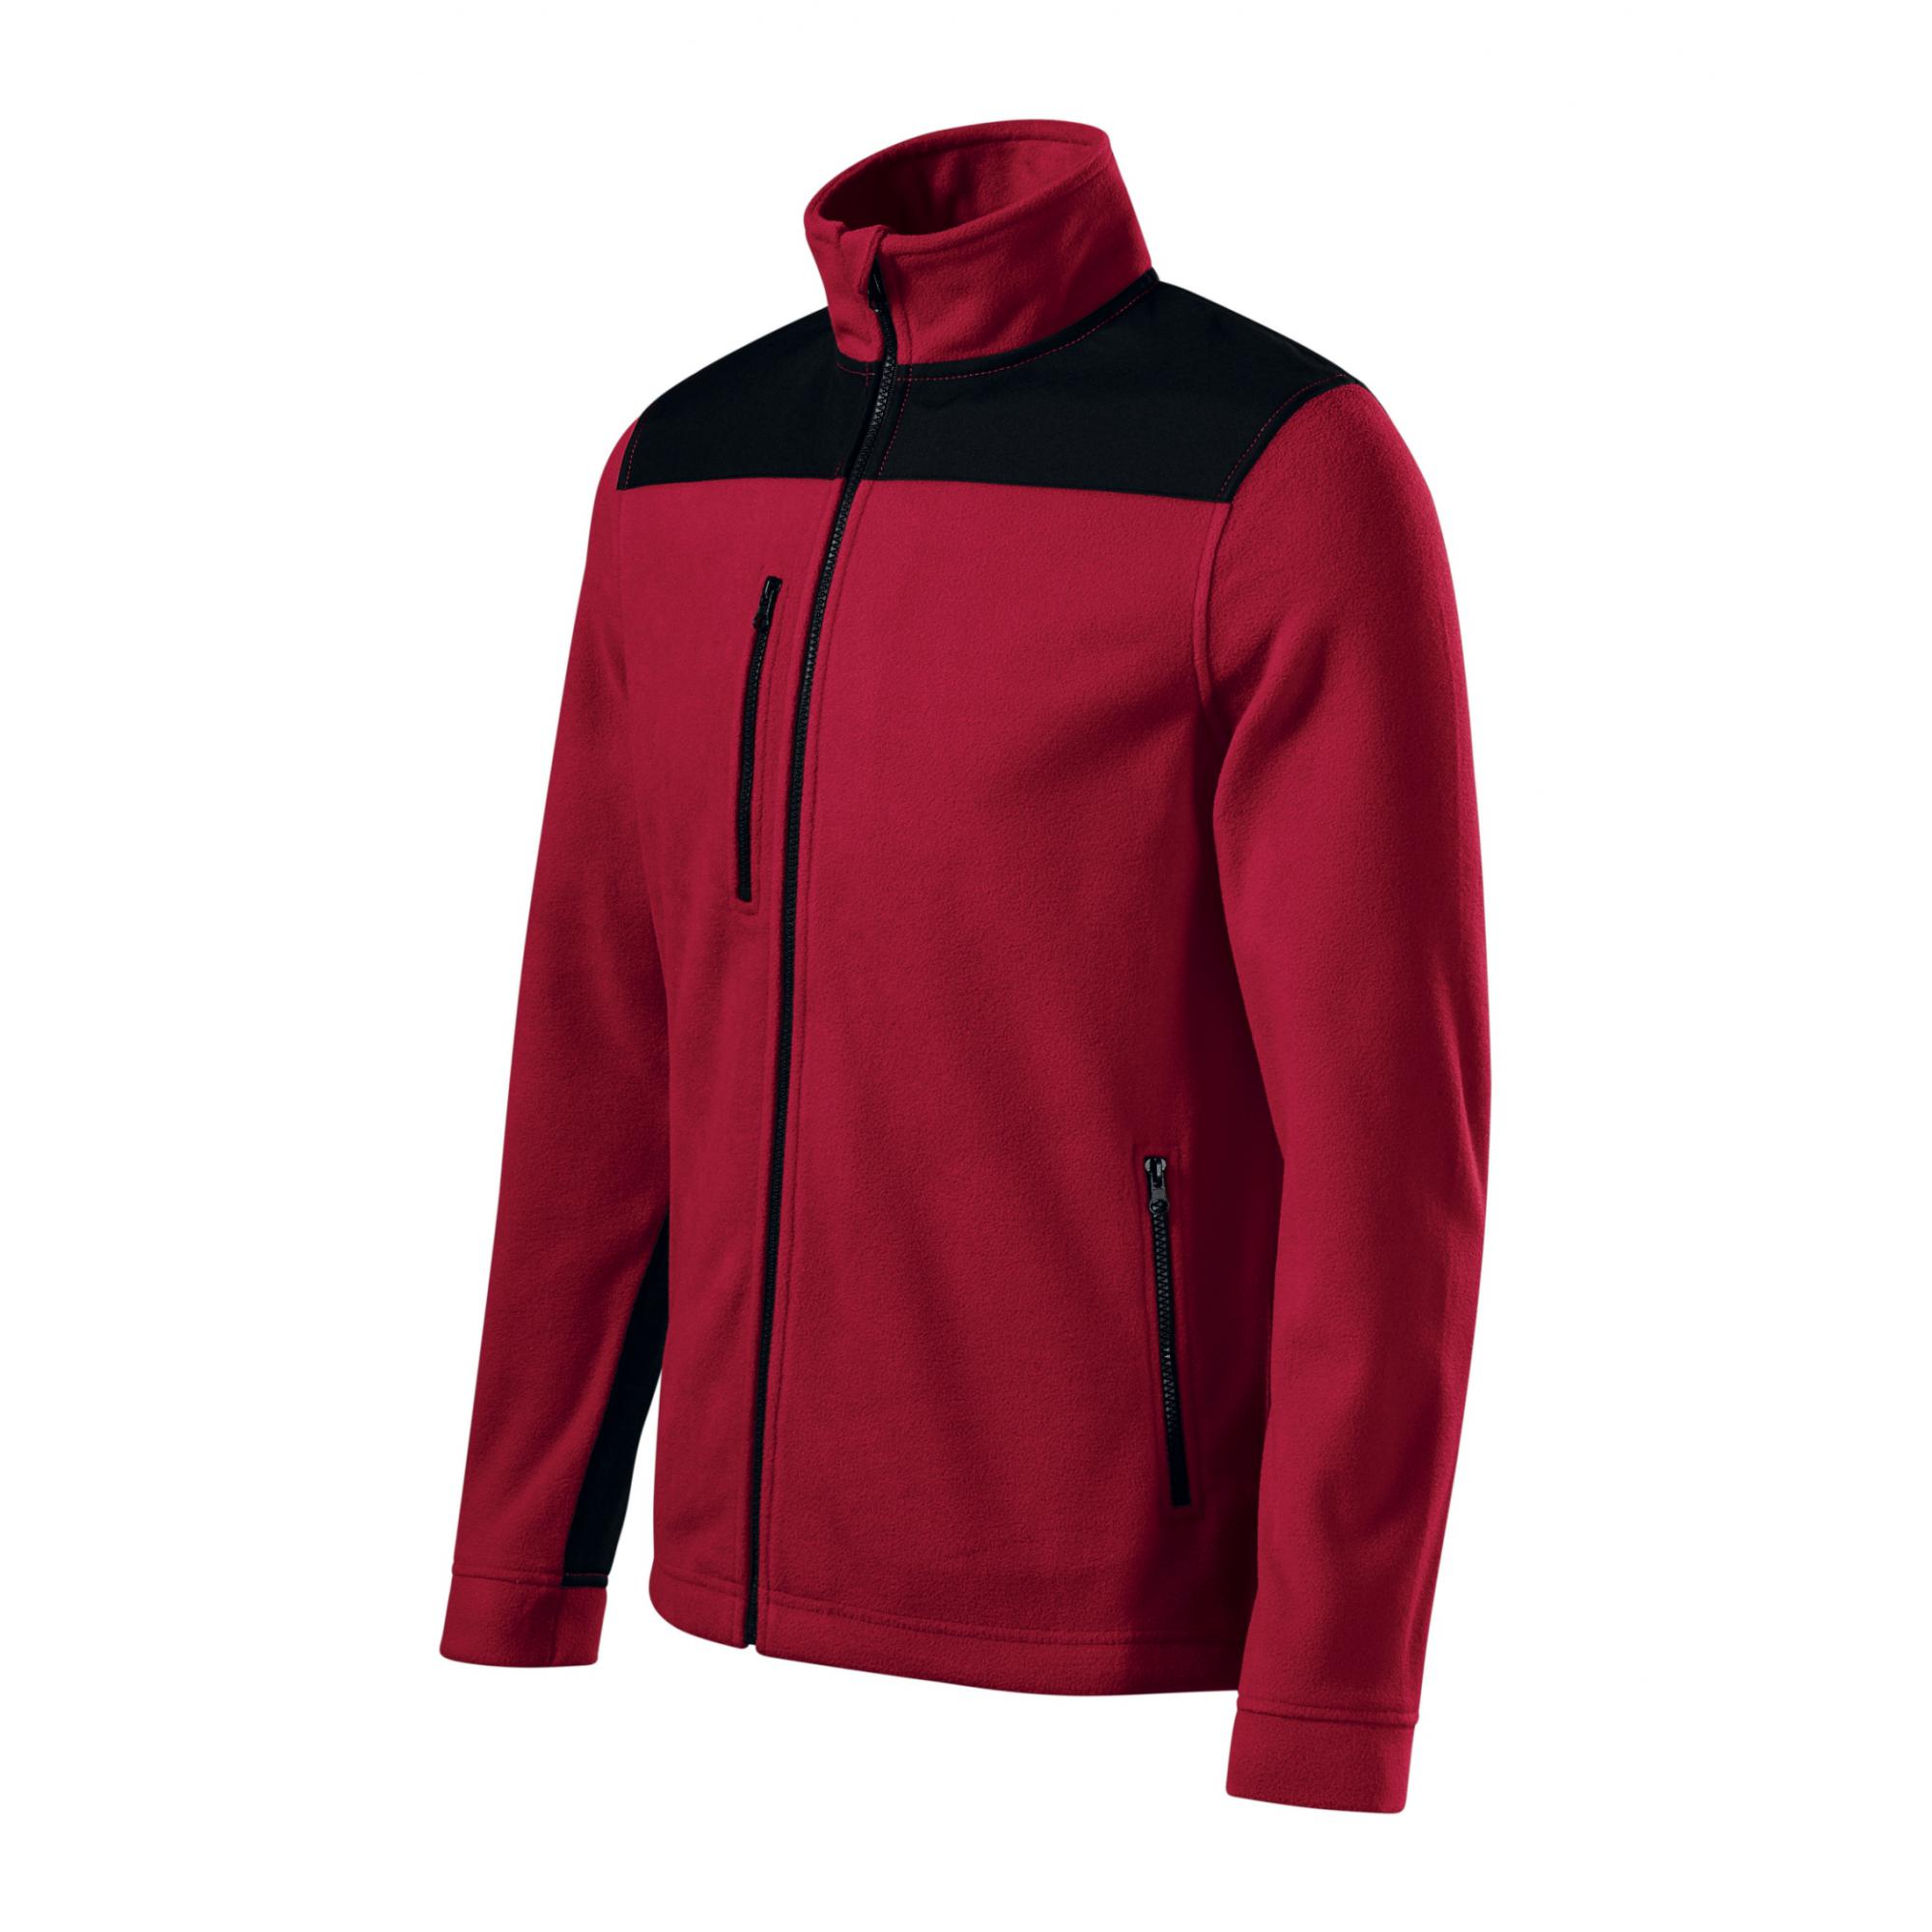 Jachetă fleece unisex Effect 530 Rosu marlboro XL